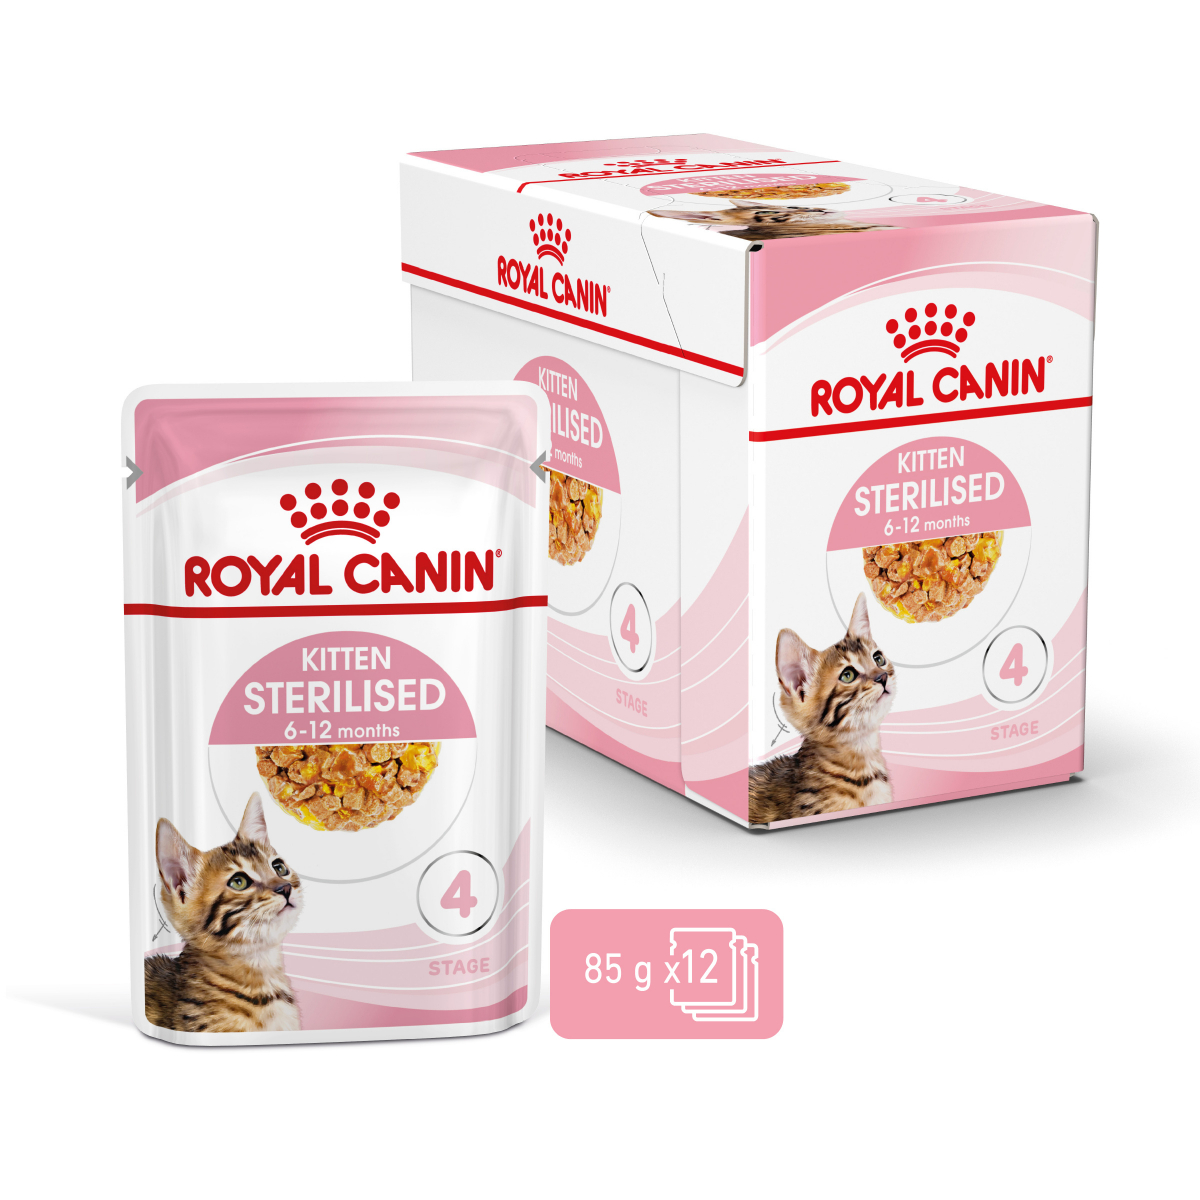 Conserve pâté en sauce Chat Stérilisé - Royal Canin